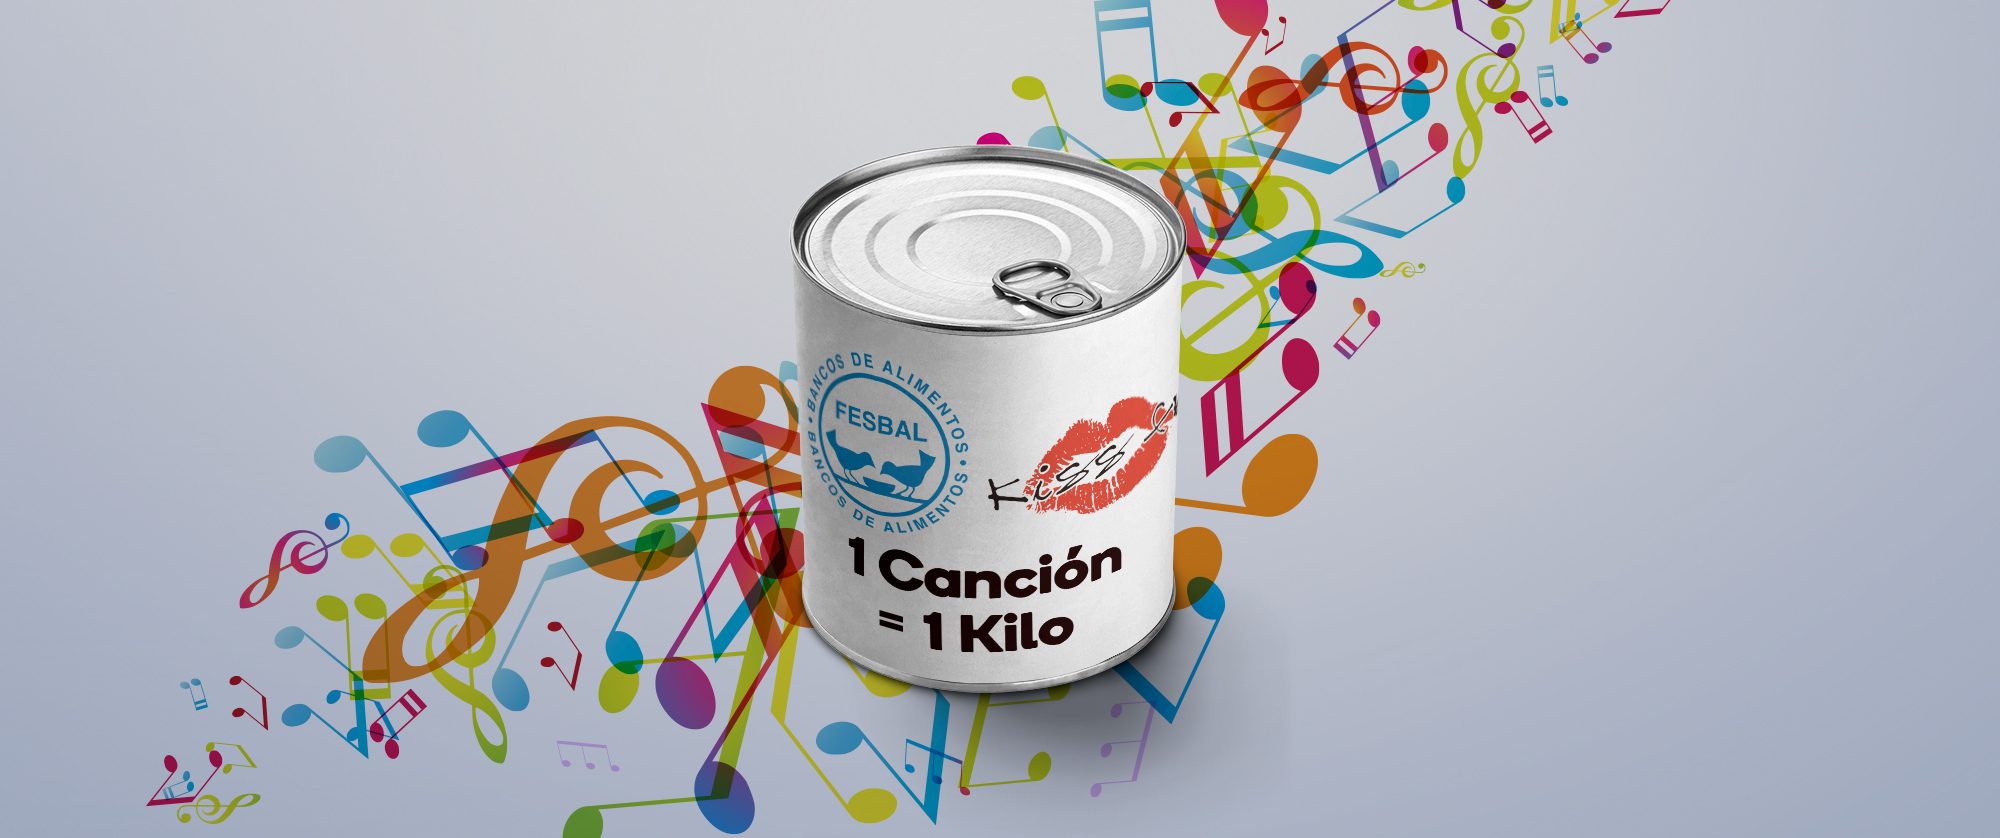 La Ibense 1892 colabora con la campaña de Kiss FM “1 Canción, 1 kilo” a beneficio del Banco de Alimentos